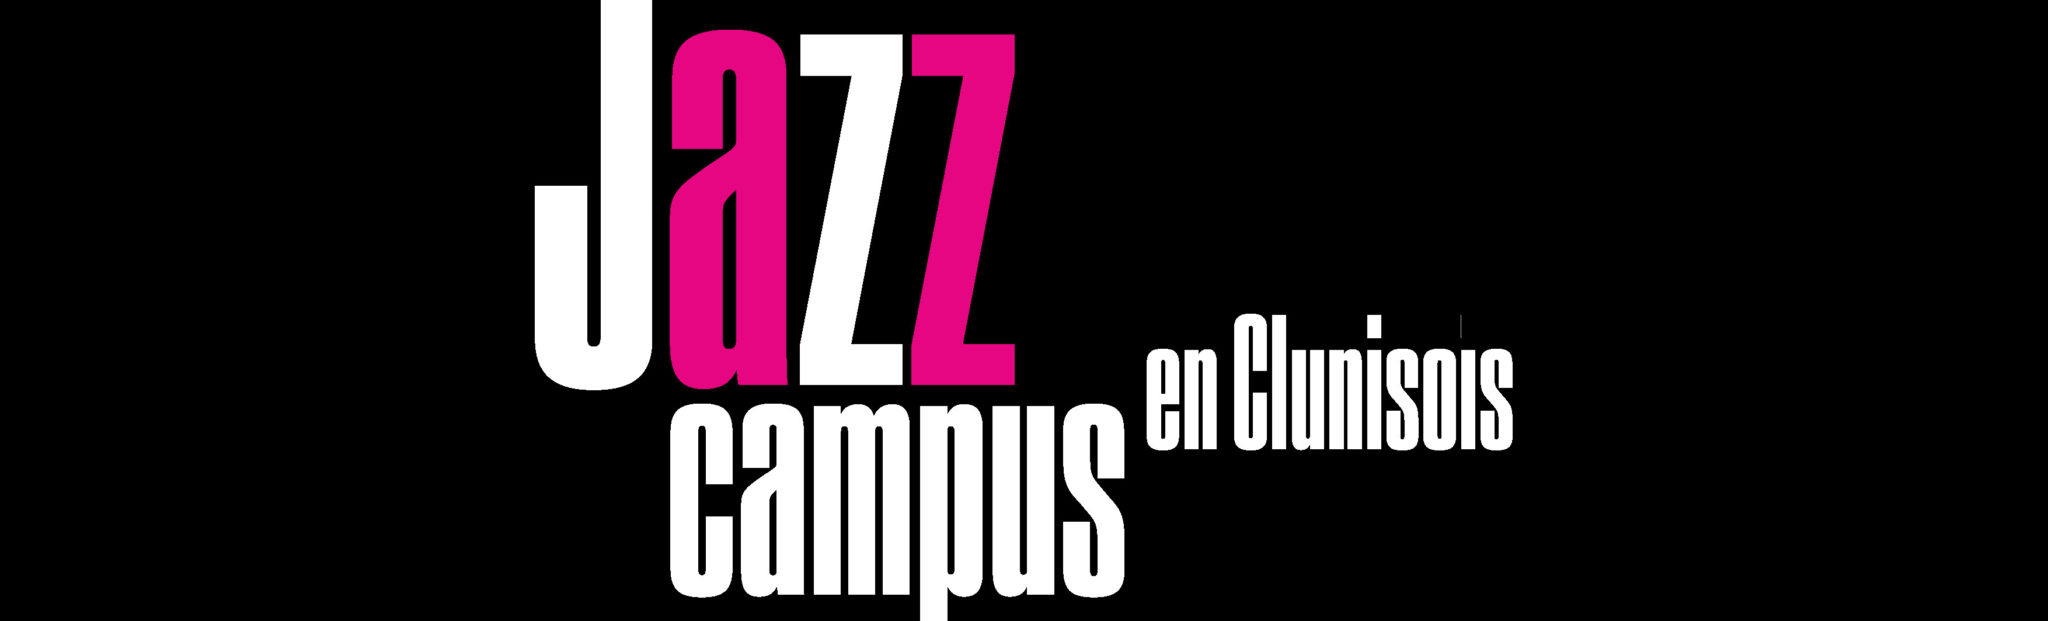 Jazz Campus en clunisois